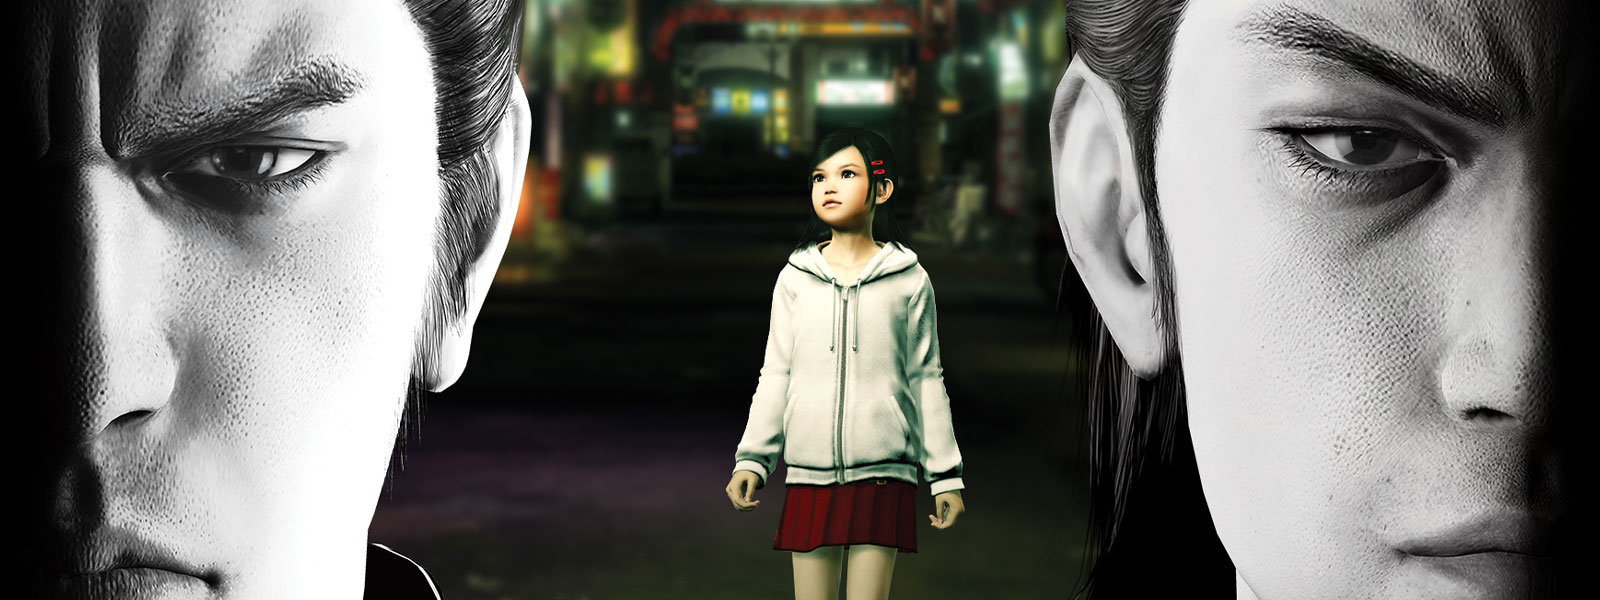 Δύο χαρακτήρες Yakuza που κοιτάζουν σοβαροί προς τα εμπρός, ενώ ένα μικρό κορίτσι στέκεται στην πόλη πίσω τους.